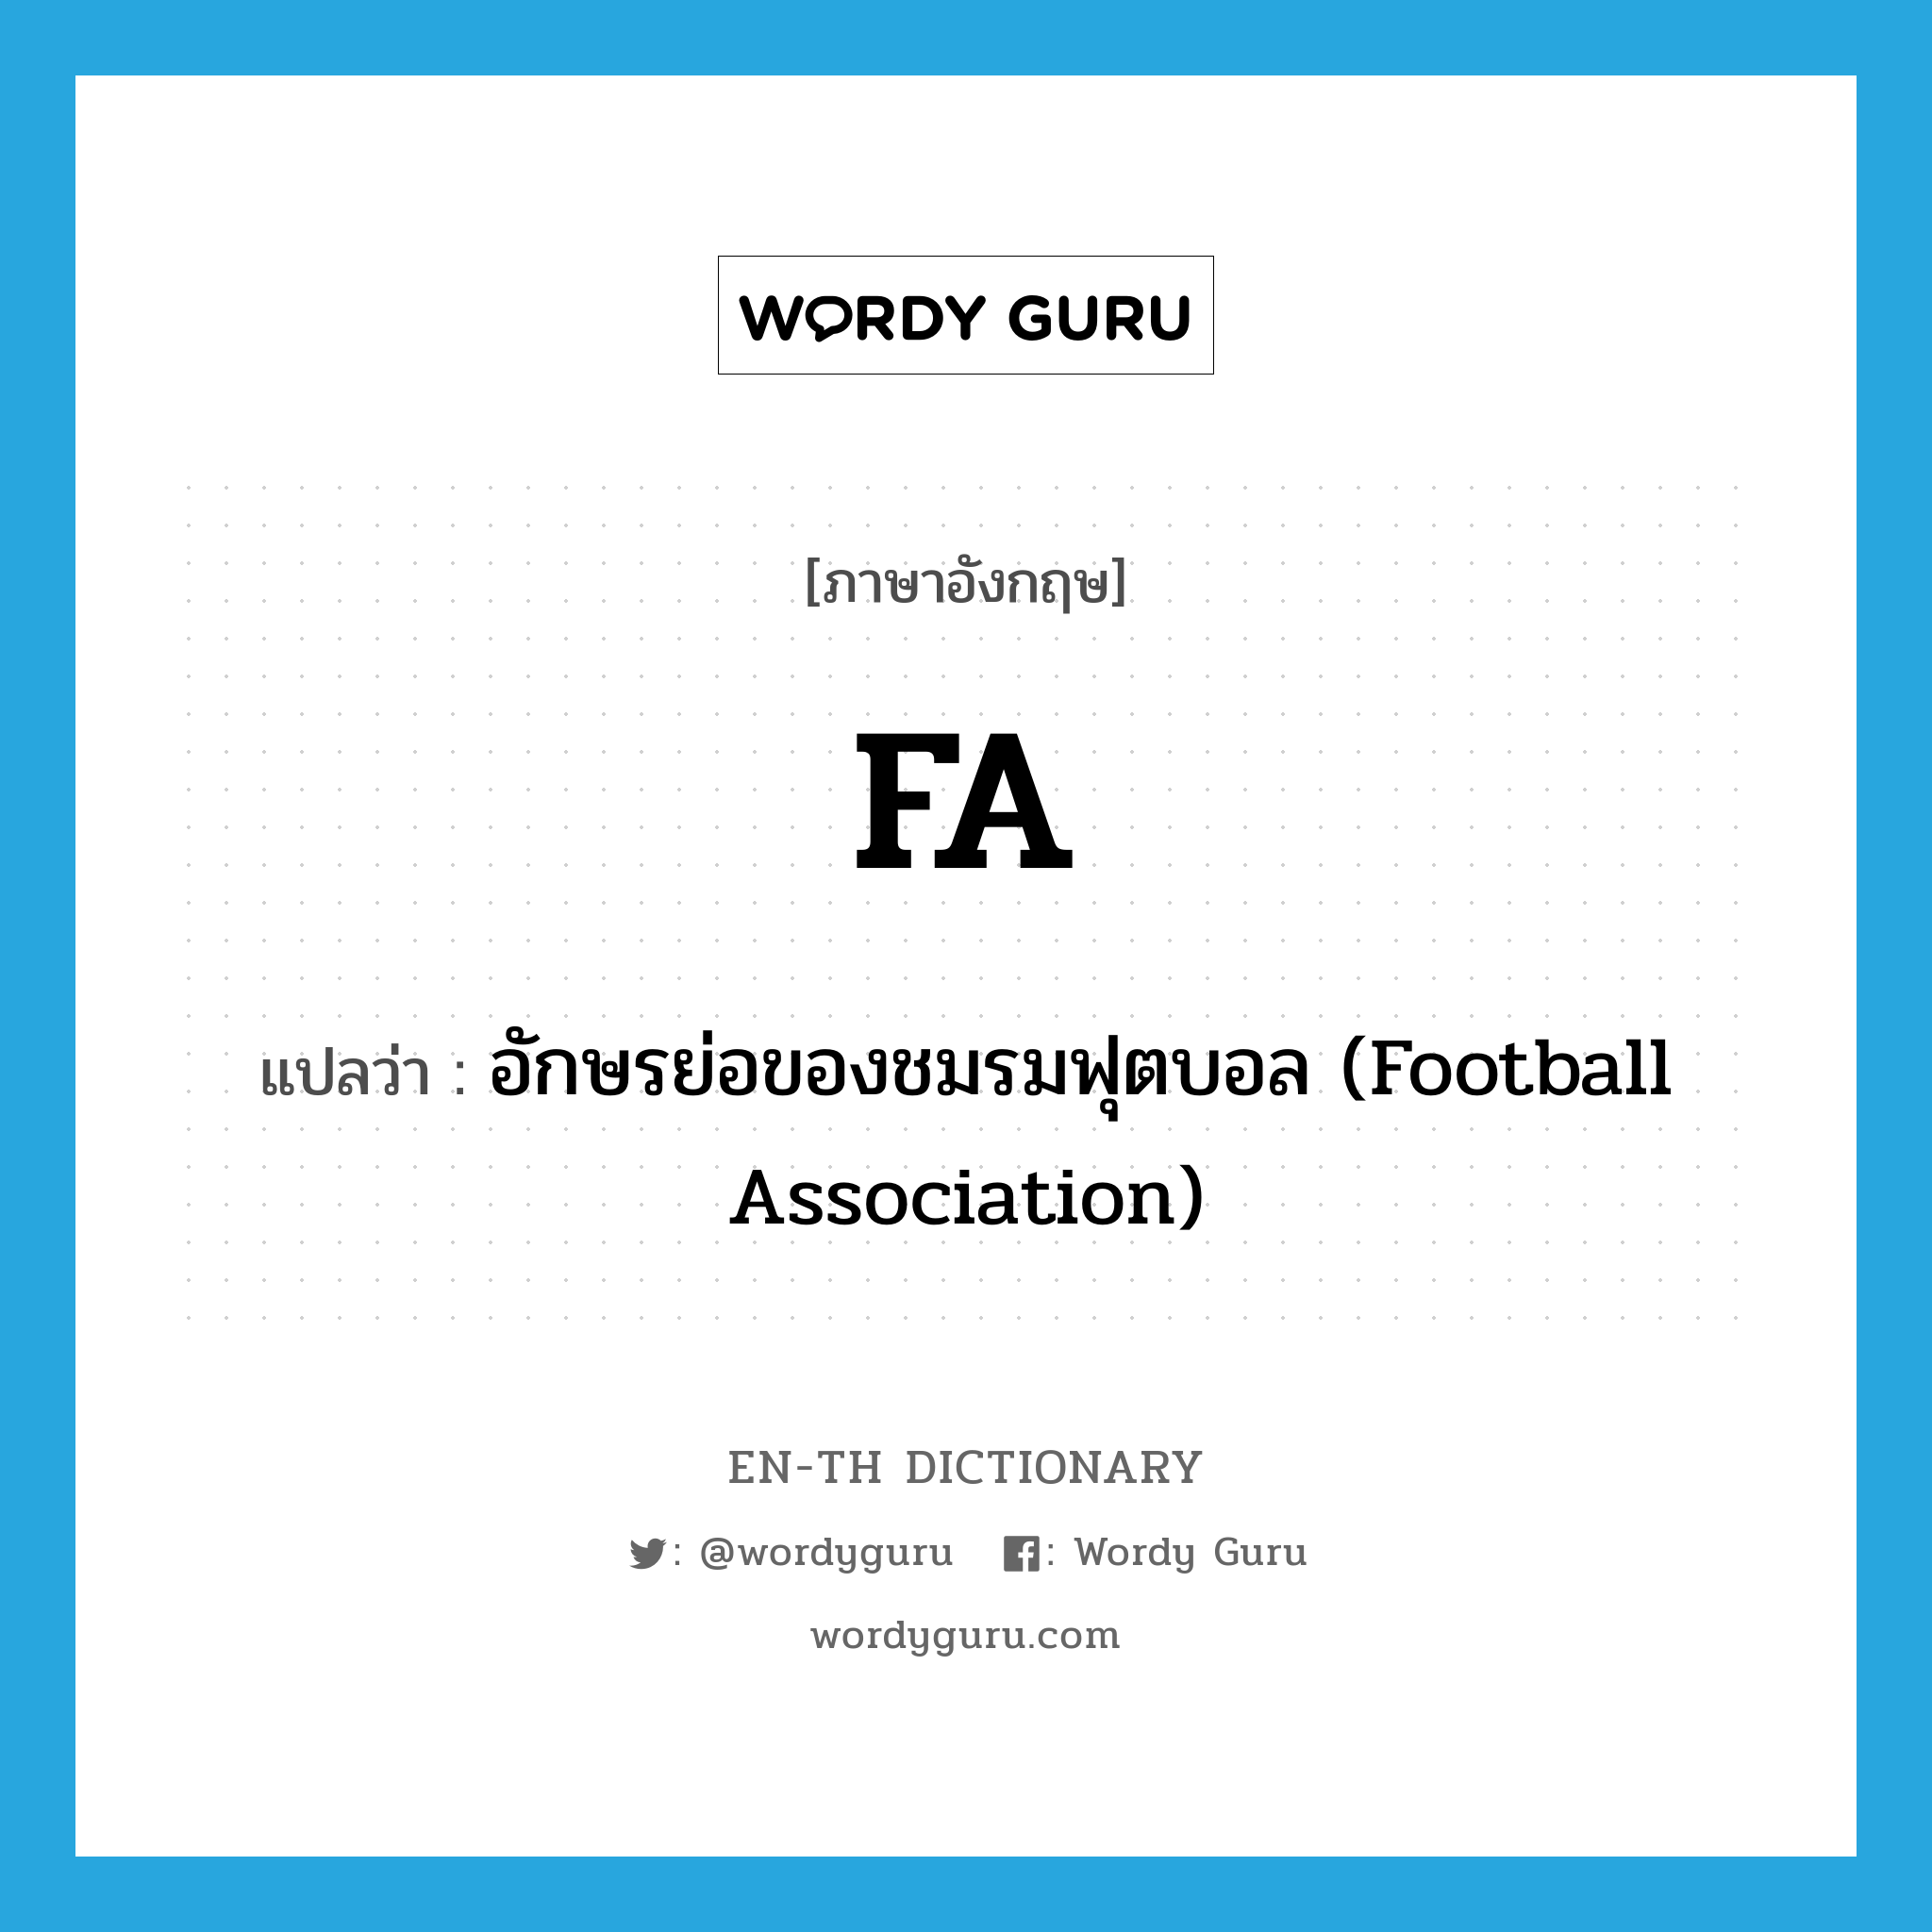 อักษรย่อของชมรมฟุตบอล (Football Association) ภาษาอังกฤษ?, คำศัพท์ภาษาอังกฤษ อักษรย่อของชมรมฟุตบอล (Football Association) แปลว่า FA ประเภท ABBR หมวด ABBR